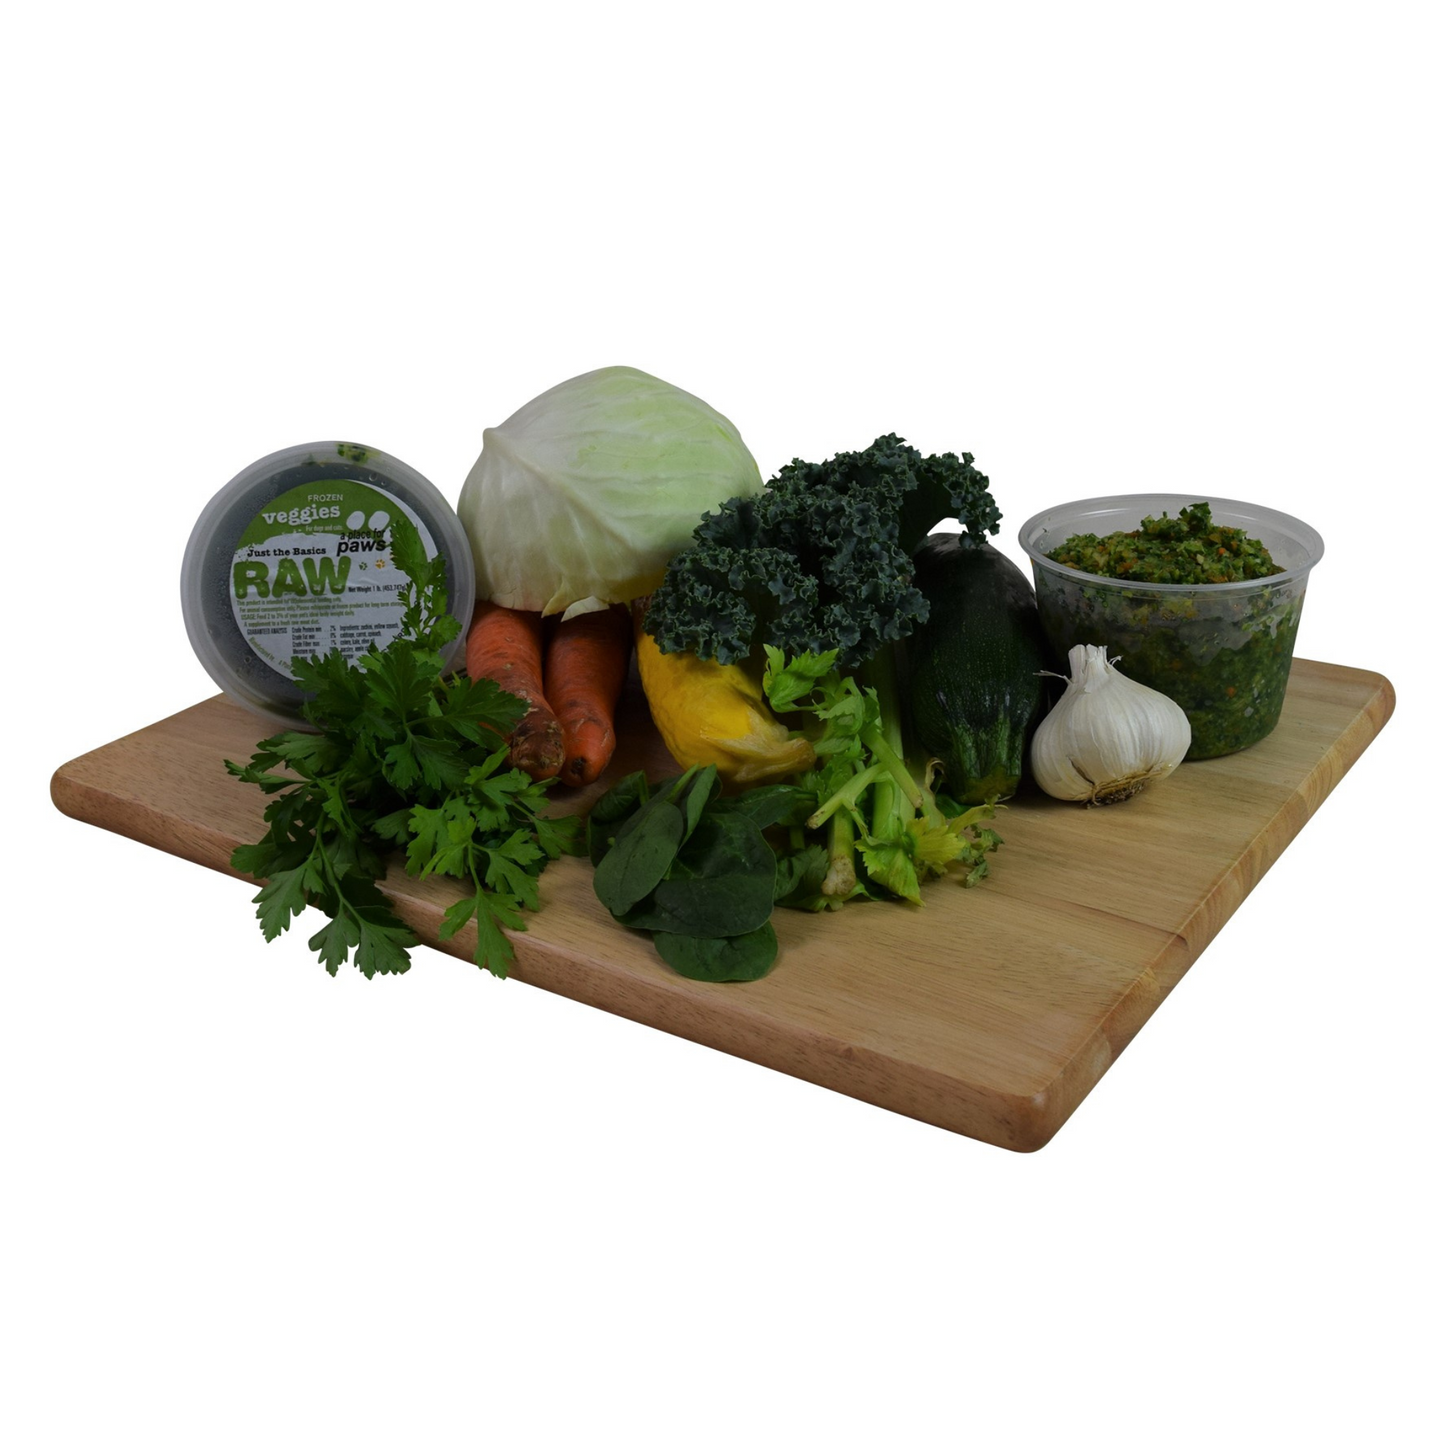 Veggies 1 lb. container - Quantity Two